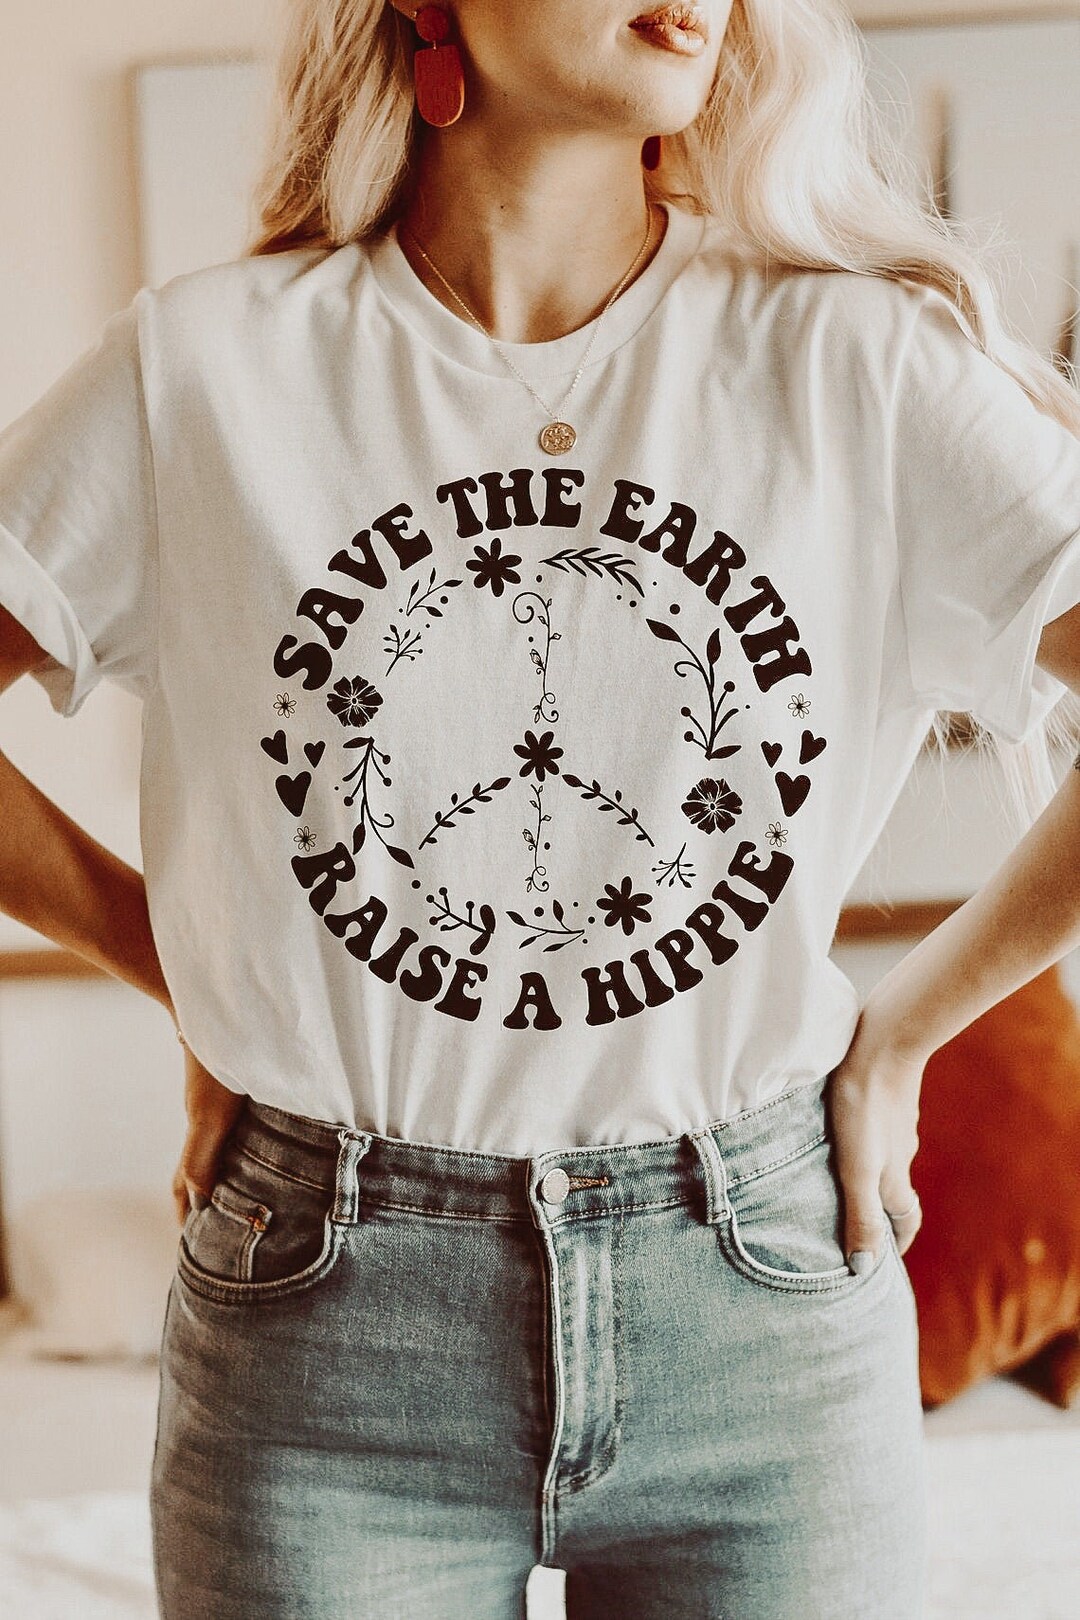 Save the Earth Raise a Hippie Retro Shirt Hippie Shirt - Etsy